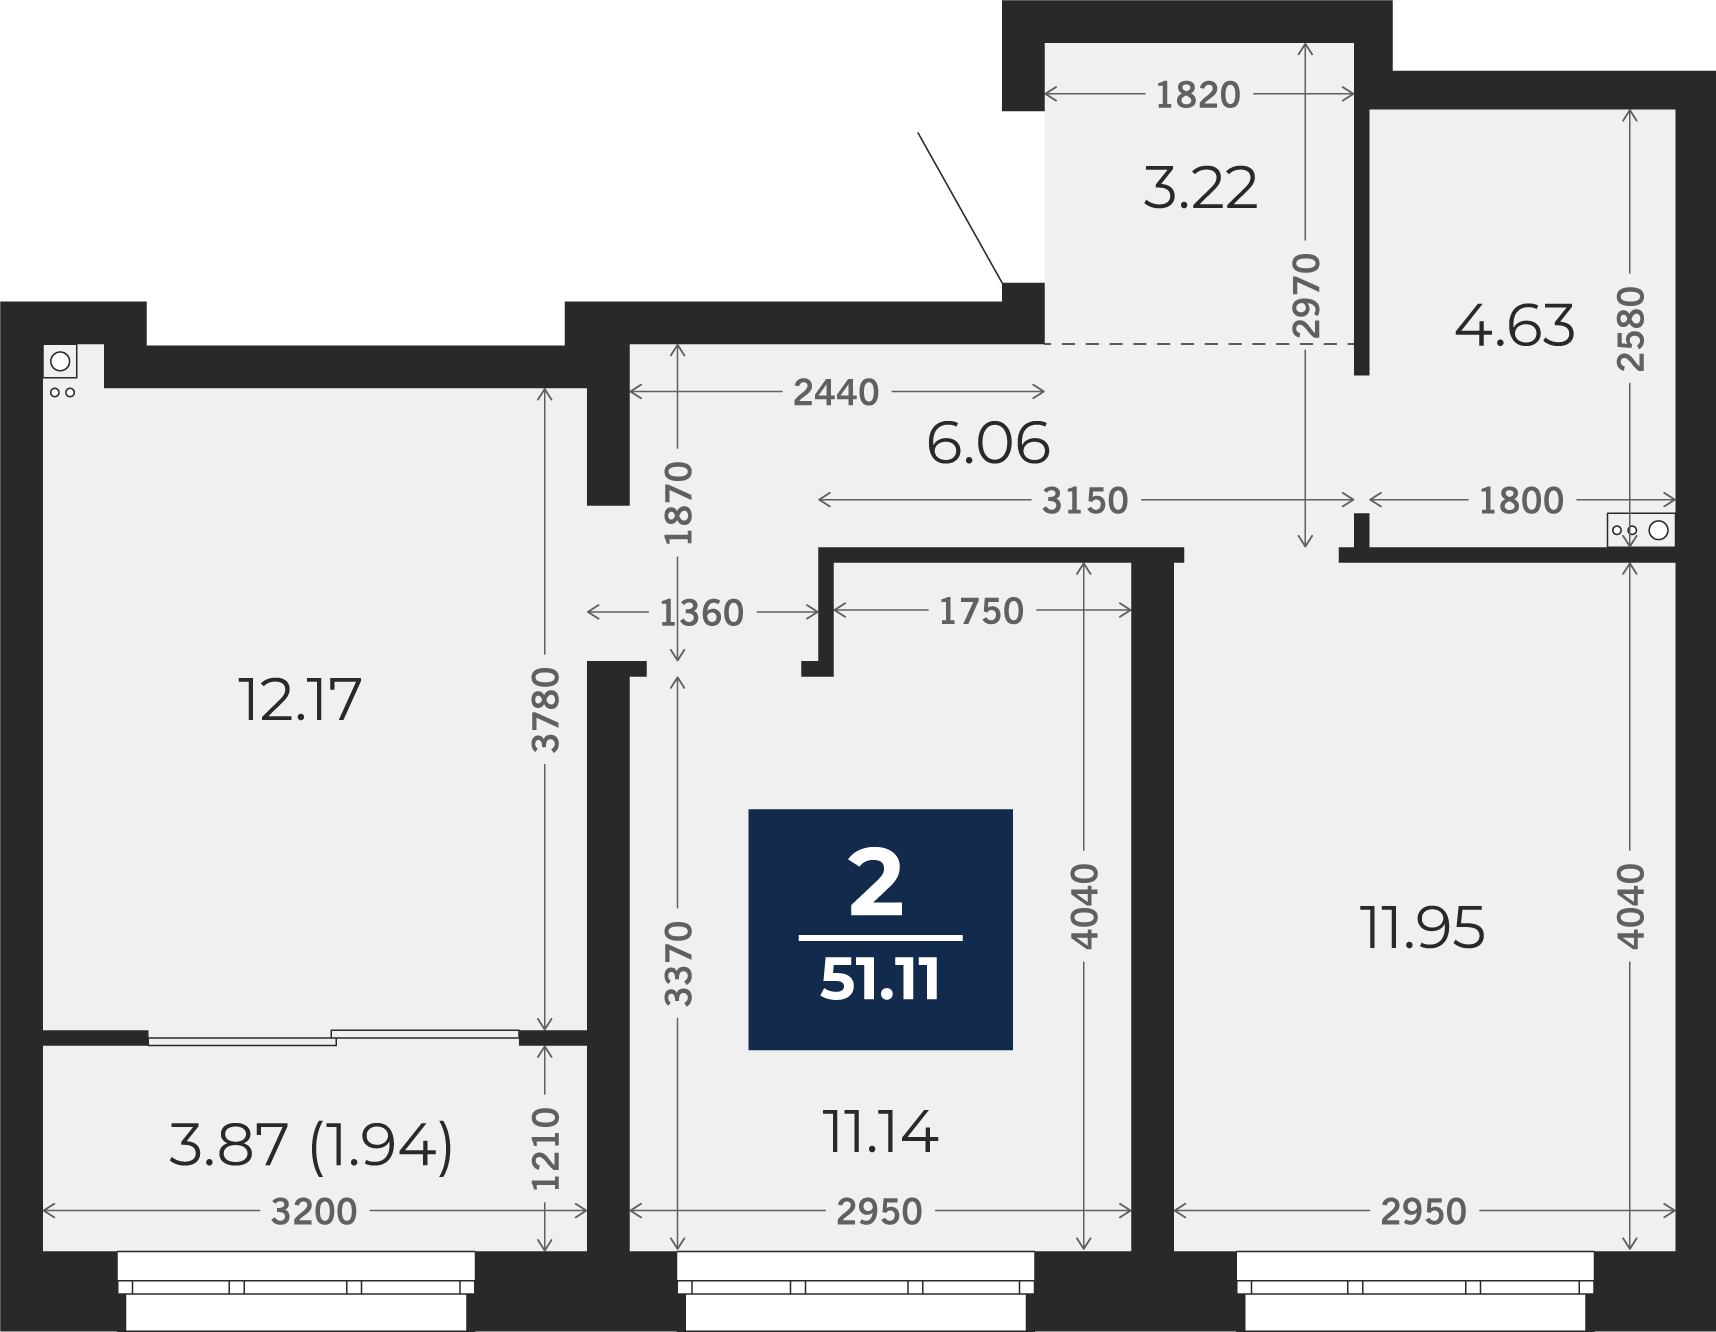 Квартира № 9, 2-комнатная, 51.11 кв. м, 3 этаж